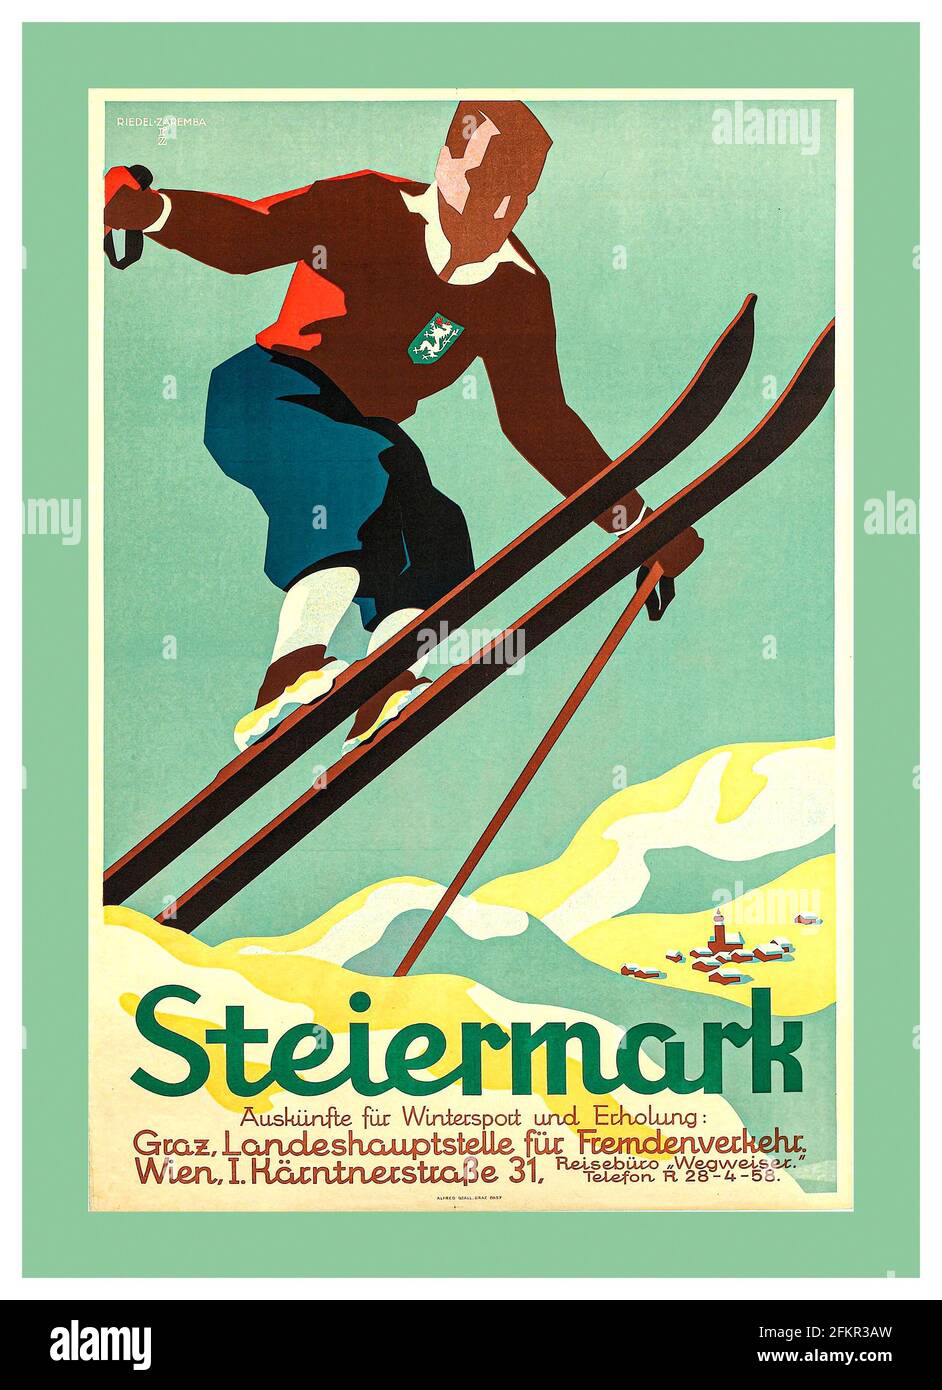 Vintage années 1930 ski Poster STEIERMARK Wintersport par Edith Reidel & Olga Zaremba la région est toujours appelée 'Steiermark' tandis qu'en anglais le nom latin 'tyria' est utilisé Steiermark, Styrie anglaise, Bundesland (état fédéral), sud-est et centre de l'Autriche, à la frontière de la Slovénie Autriche Banque D'Images